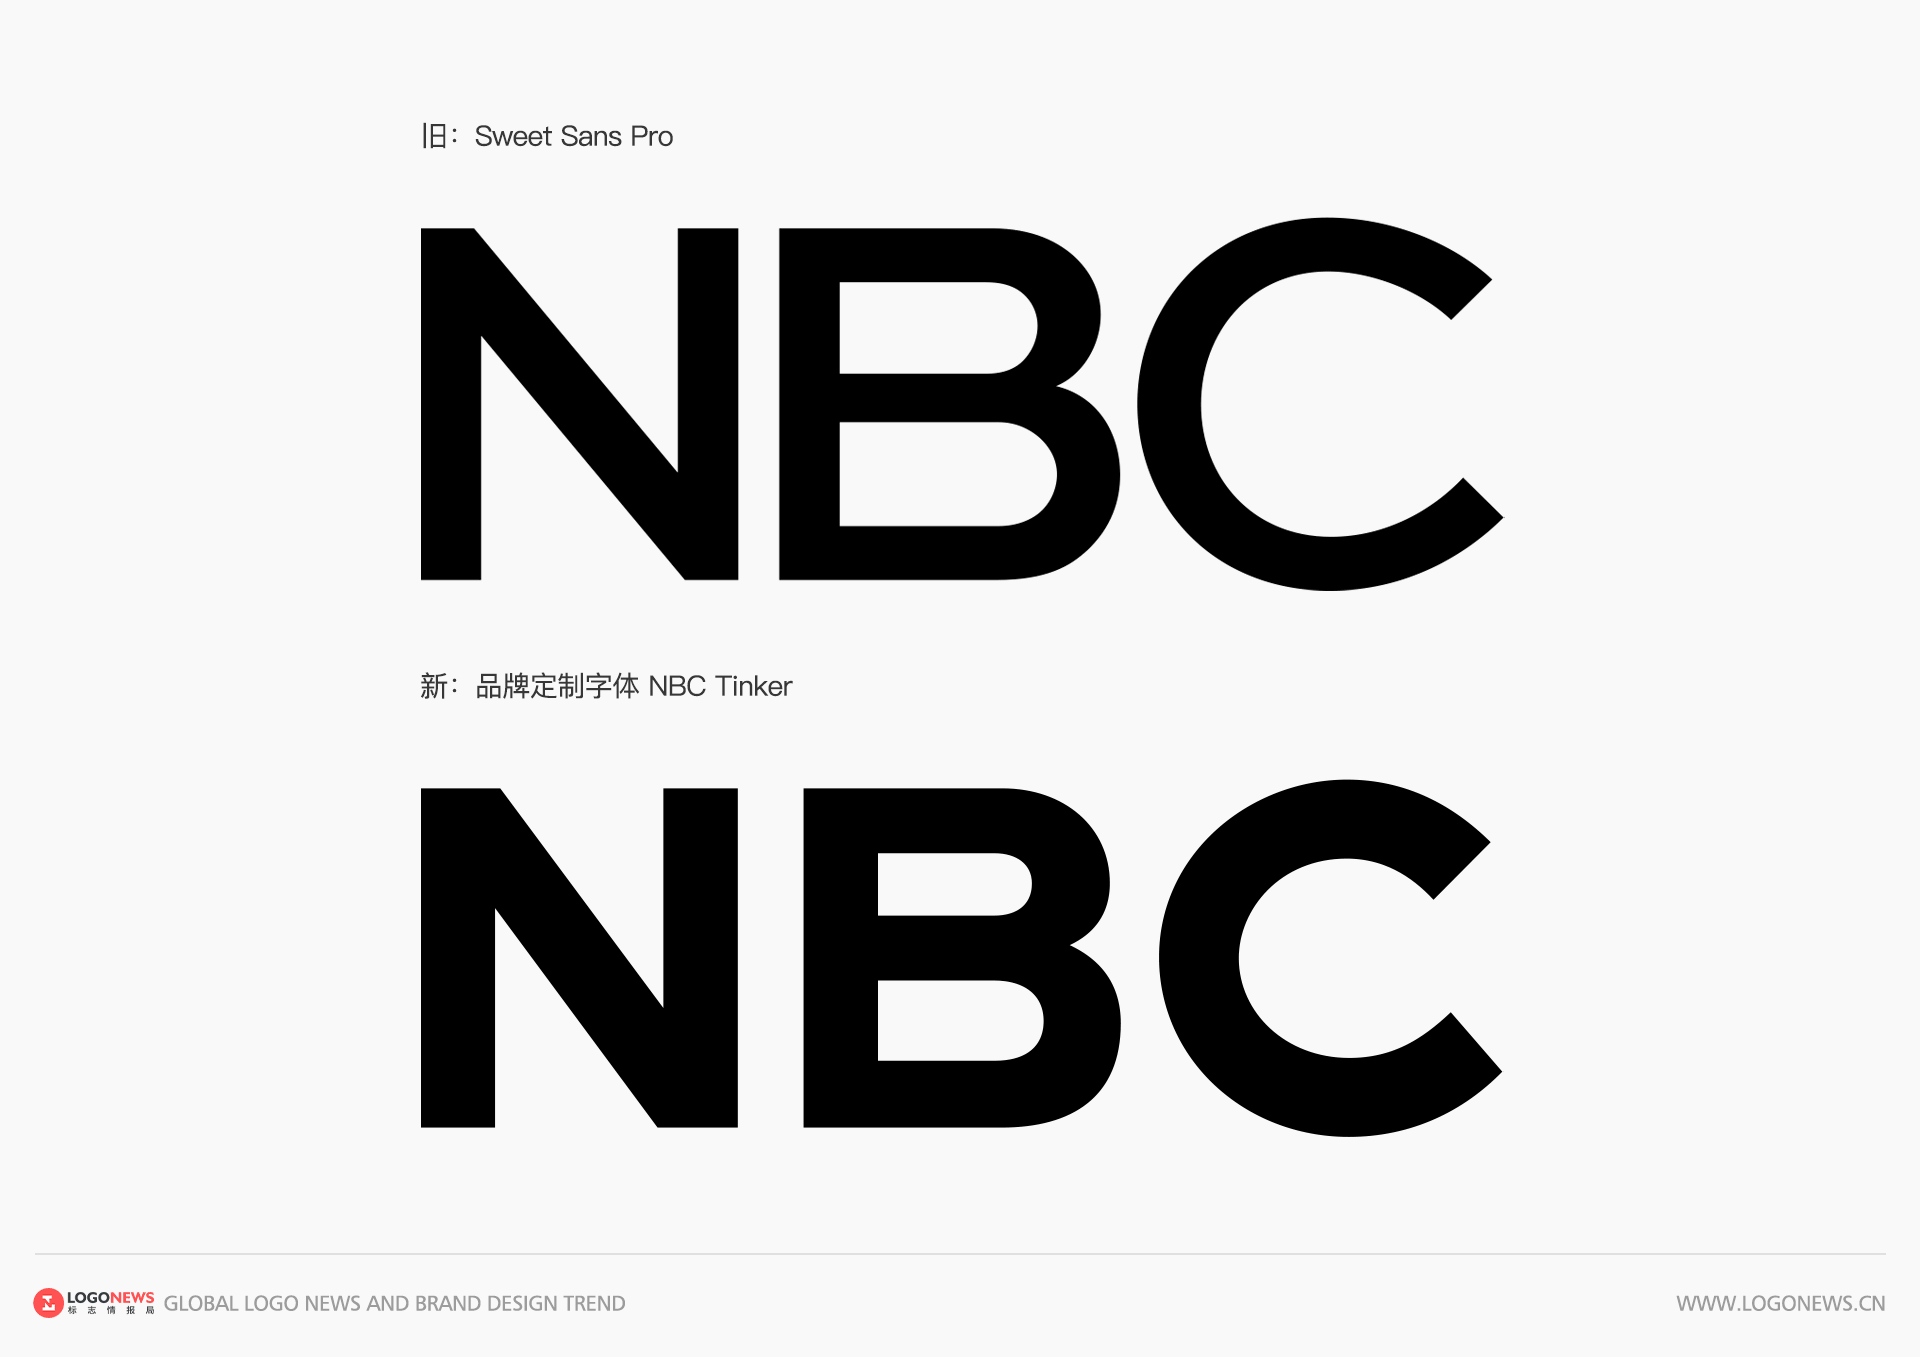 美國國家廣播公司NBC 更新彩色孔雀LOGO，賦予更鮮豔明亮的色彩 6